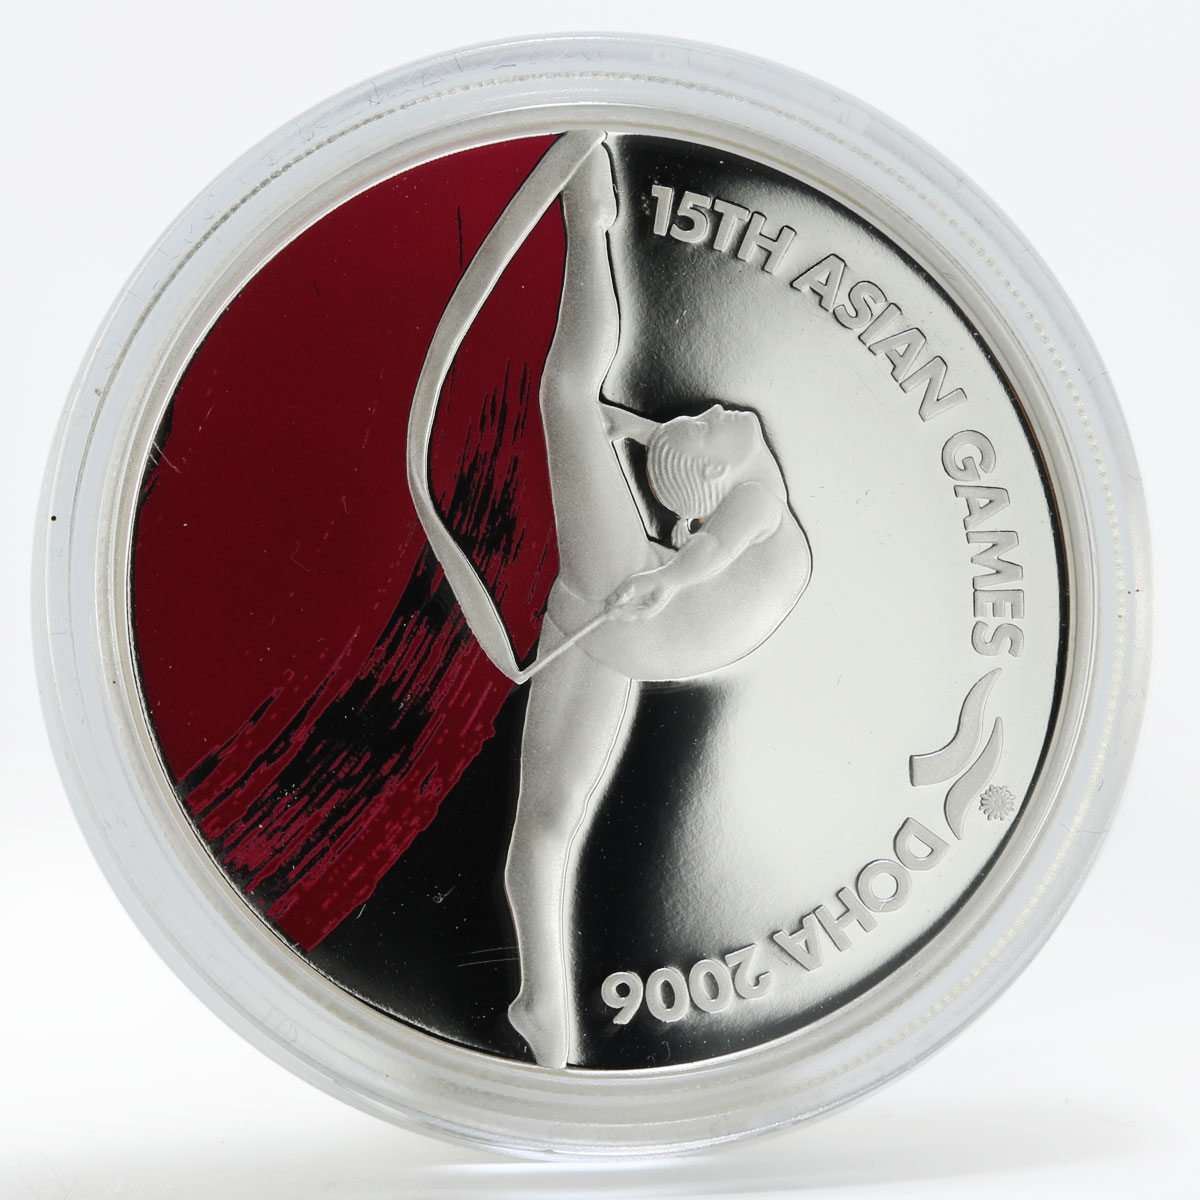 Qatar 10 riyals Asian Games Artistic Gymnastics proof silver coin 2006